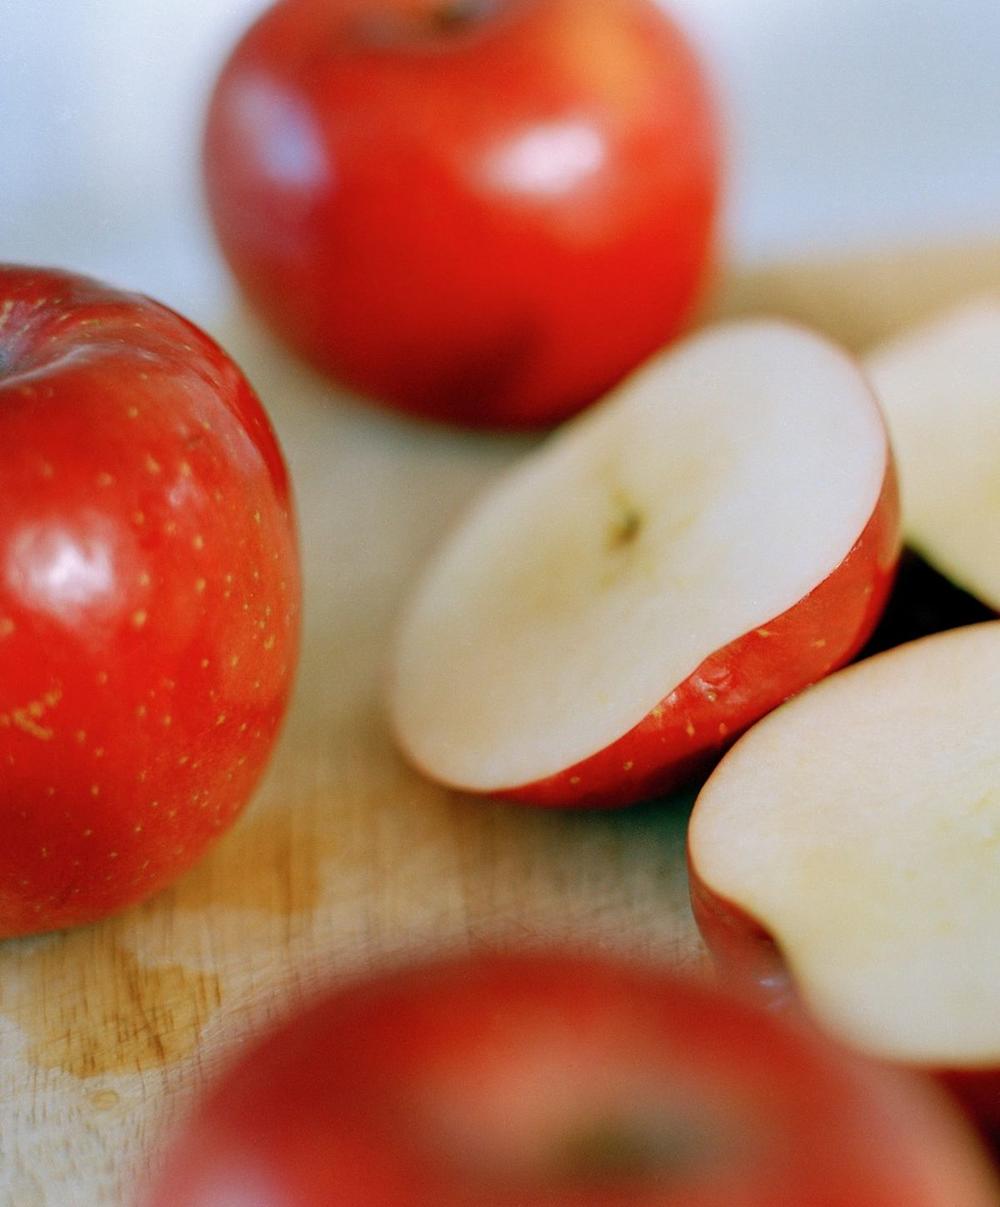 <p>Iako se svrstava u u najzdravije plodove prirode, seme jabuke sadrži veoma otrovan sastojak, koji su nacisti koristili u gasnim komorama...</p>